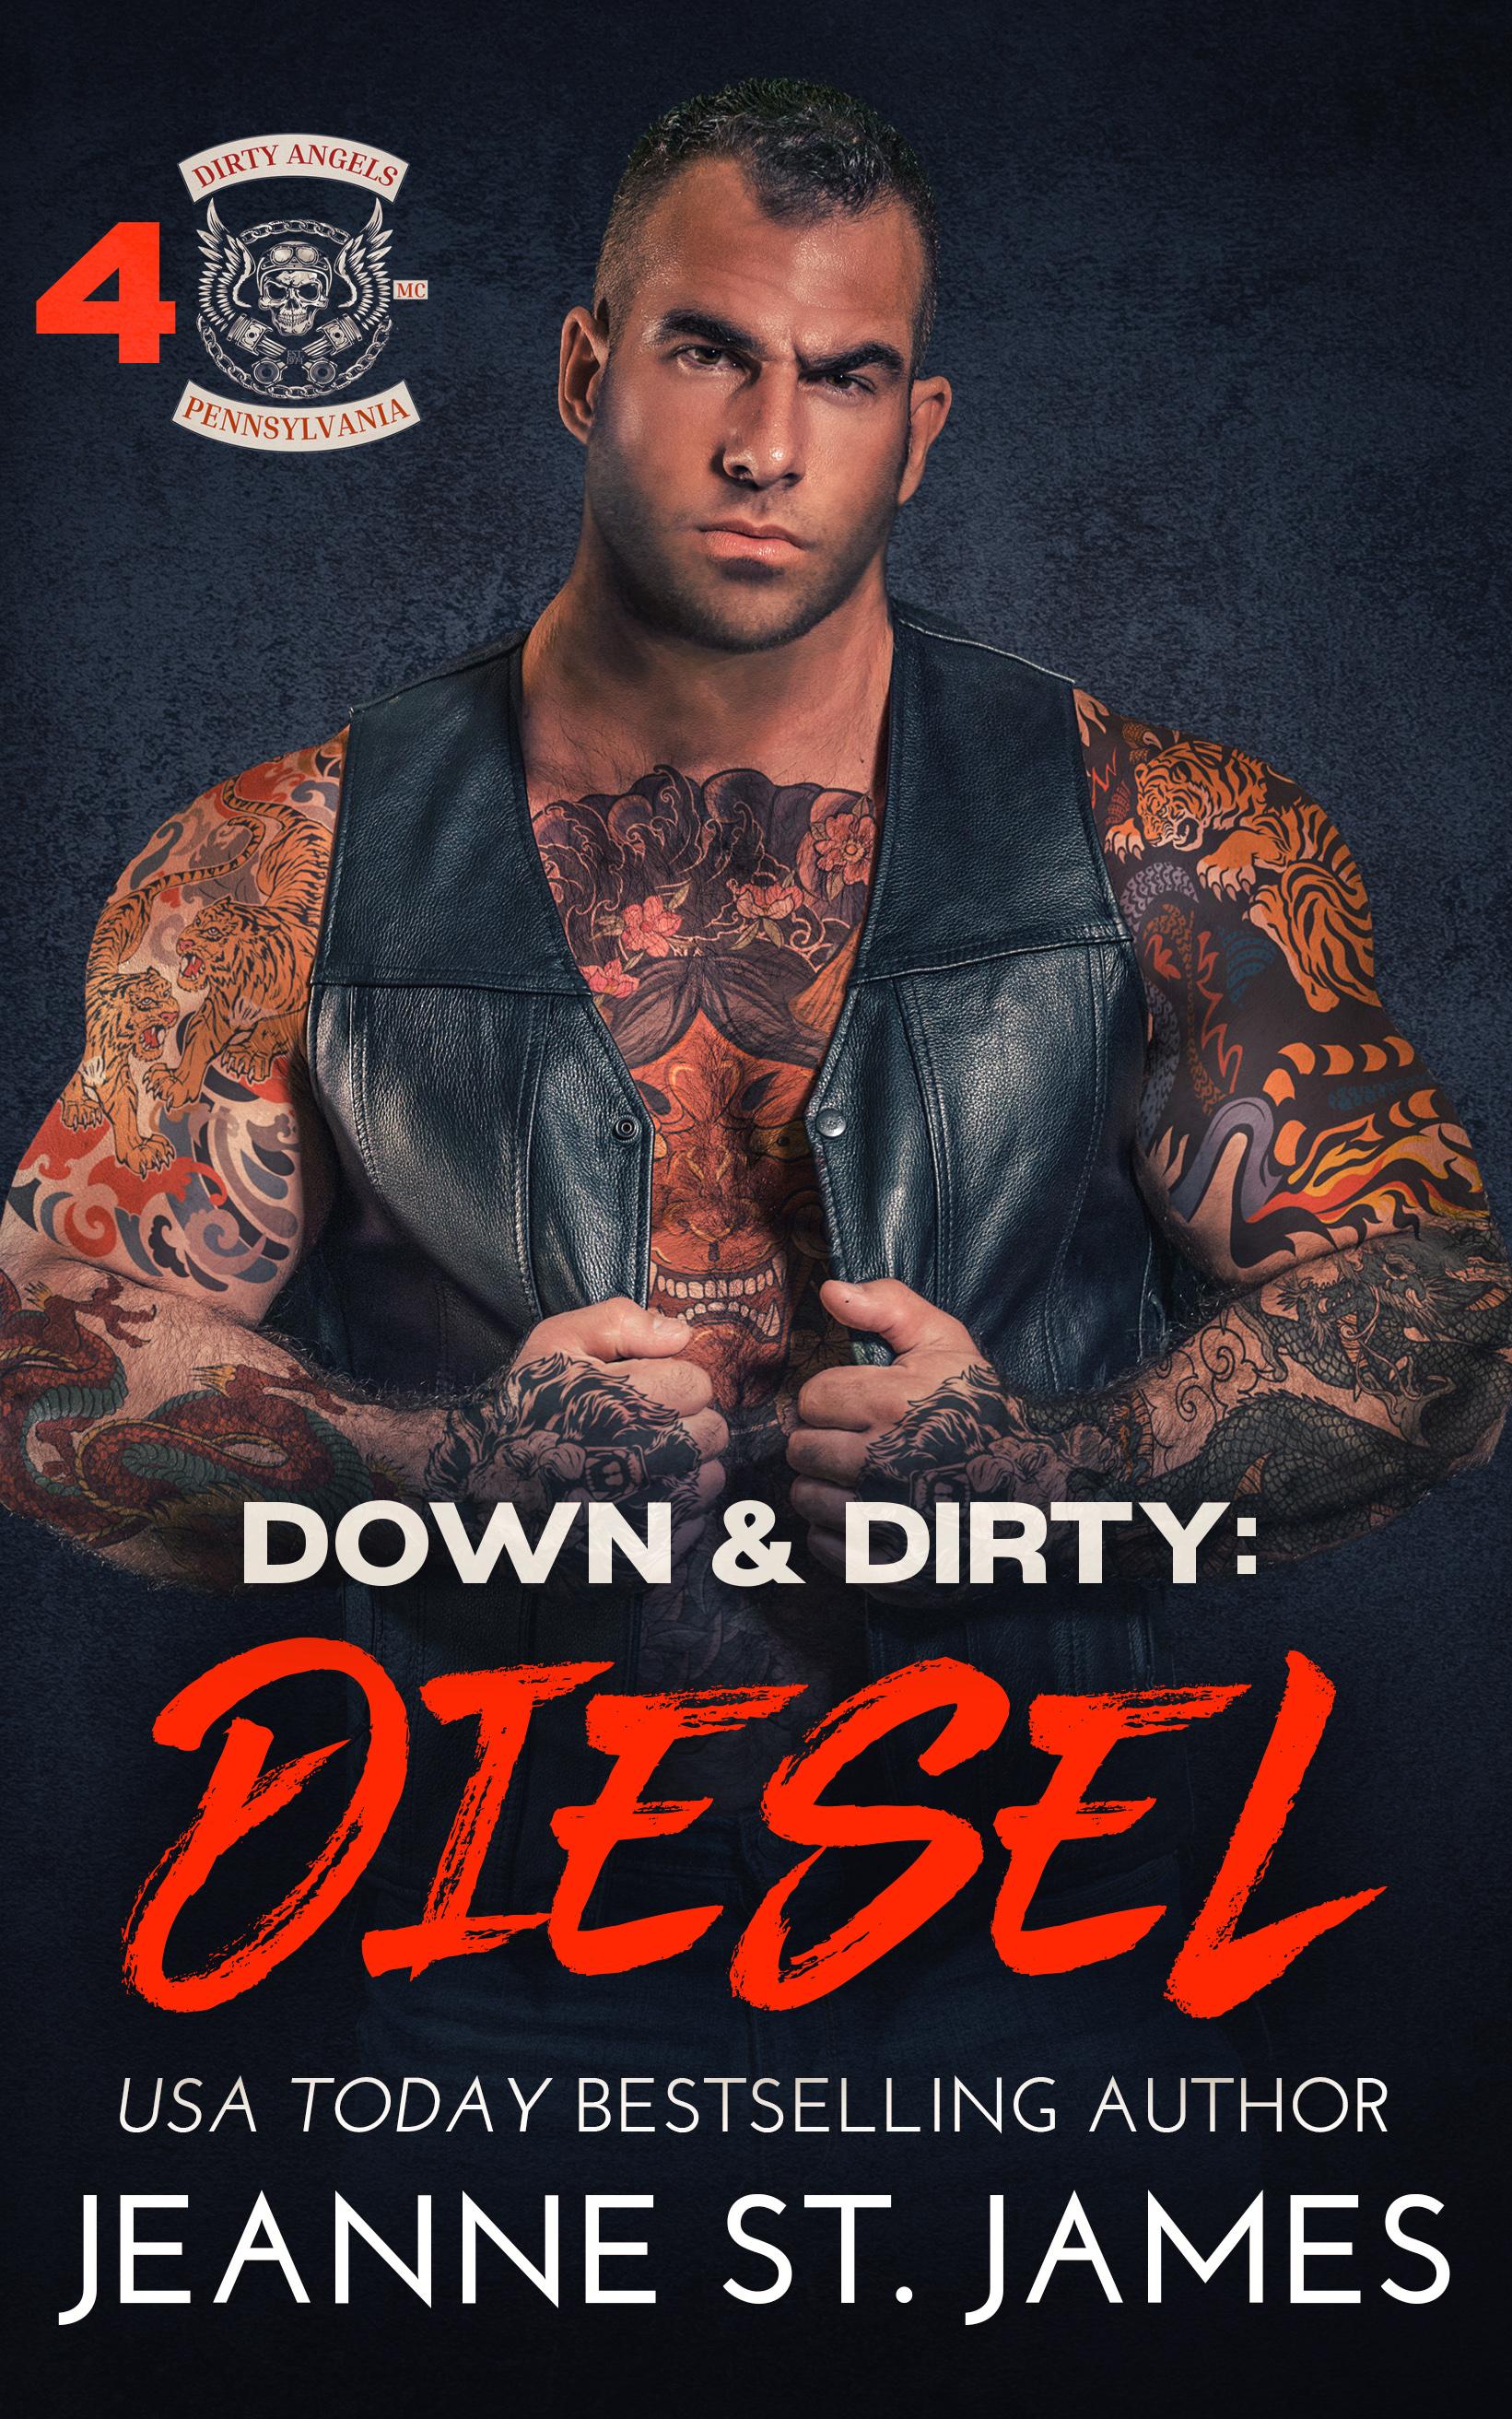 Down & Dirty: Diesel